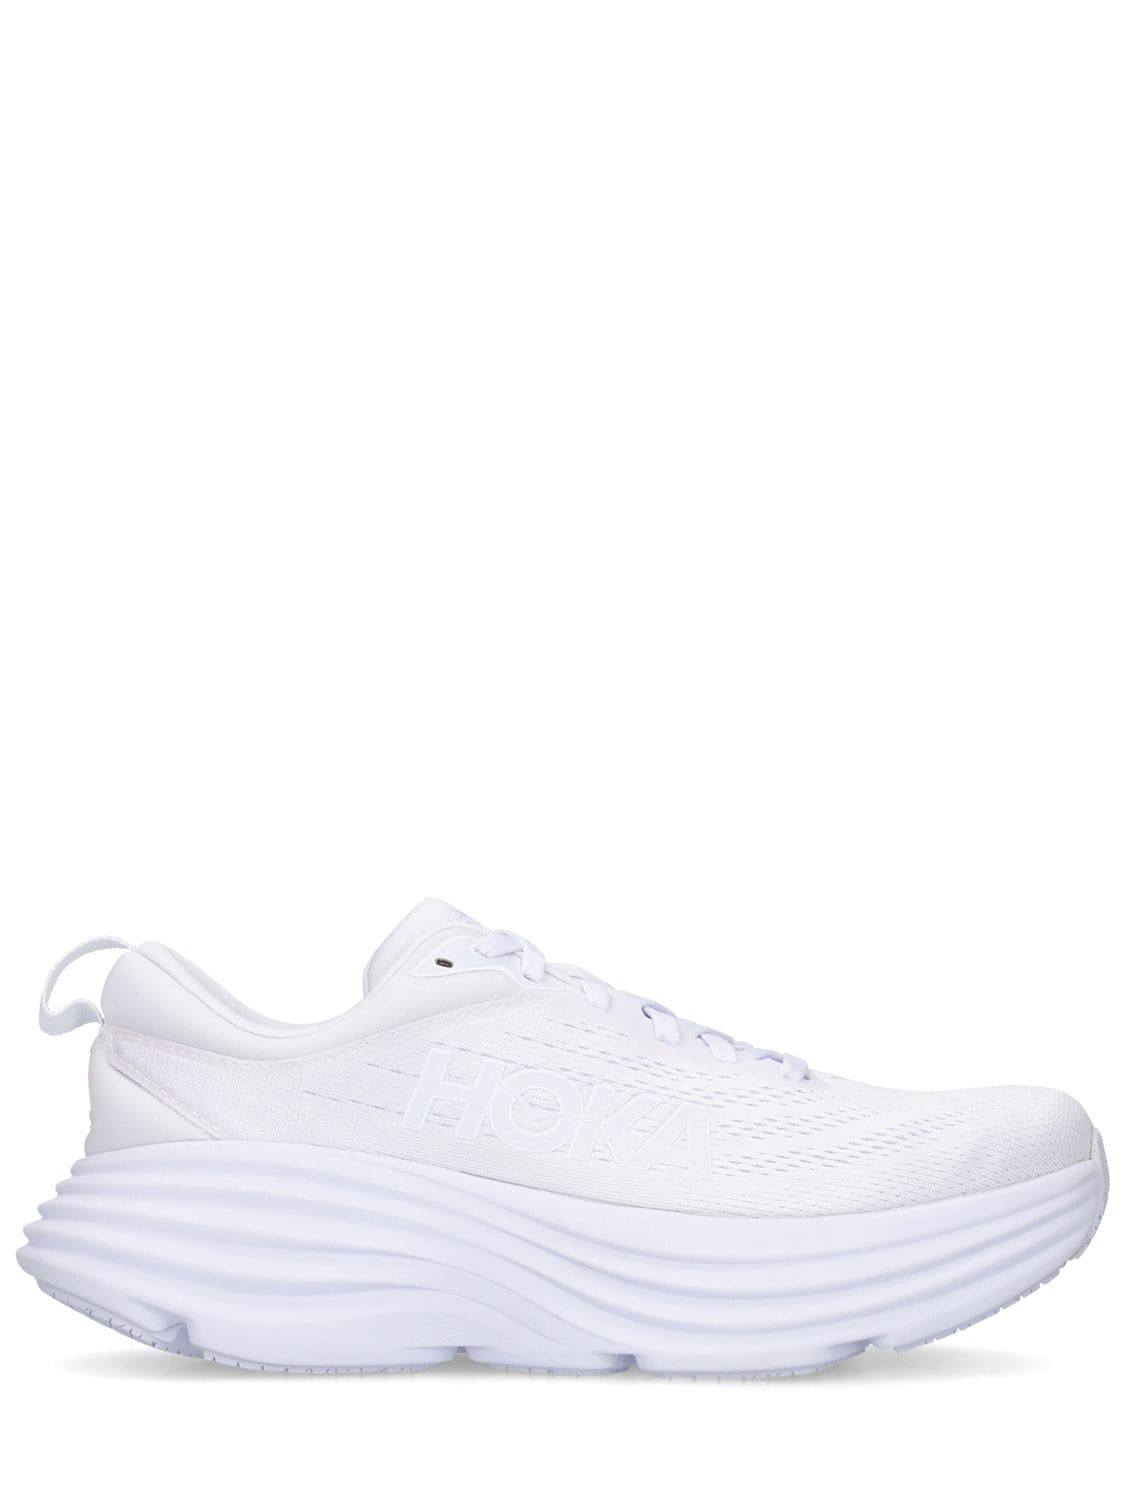 Hoka One One Bondi 8 Lifestyle Sneakers In White | ModeSens